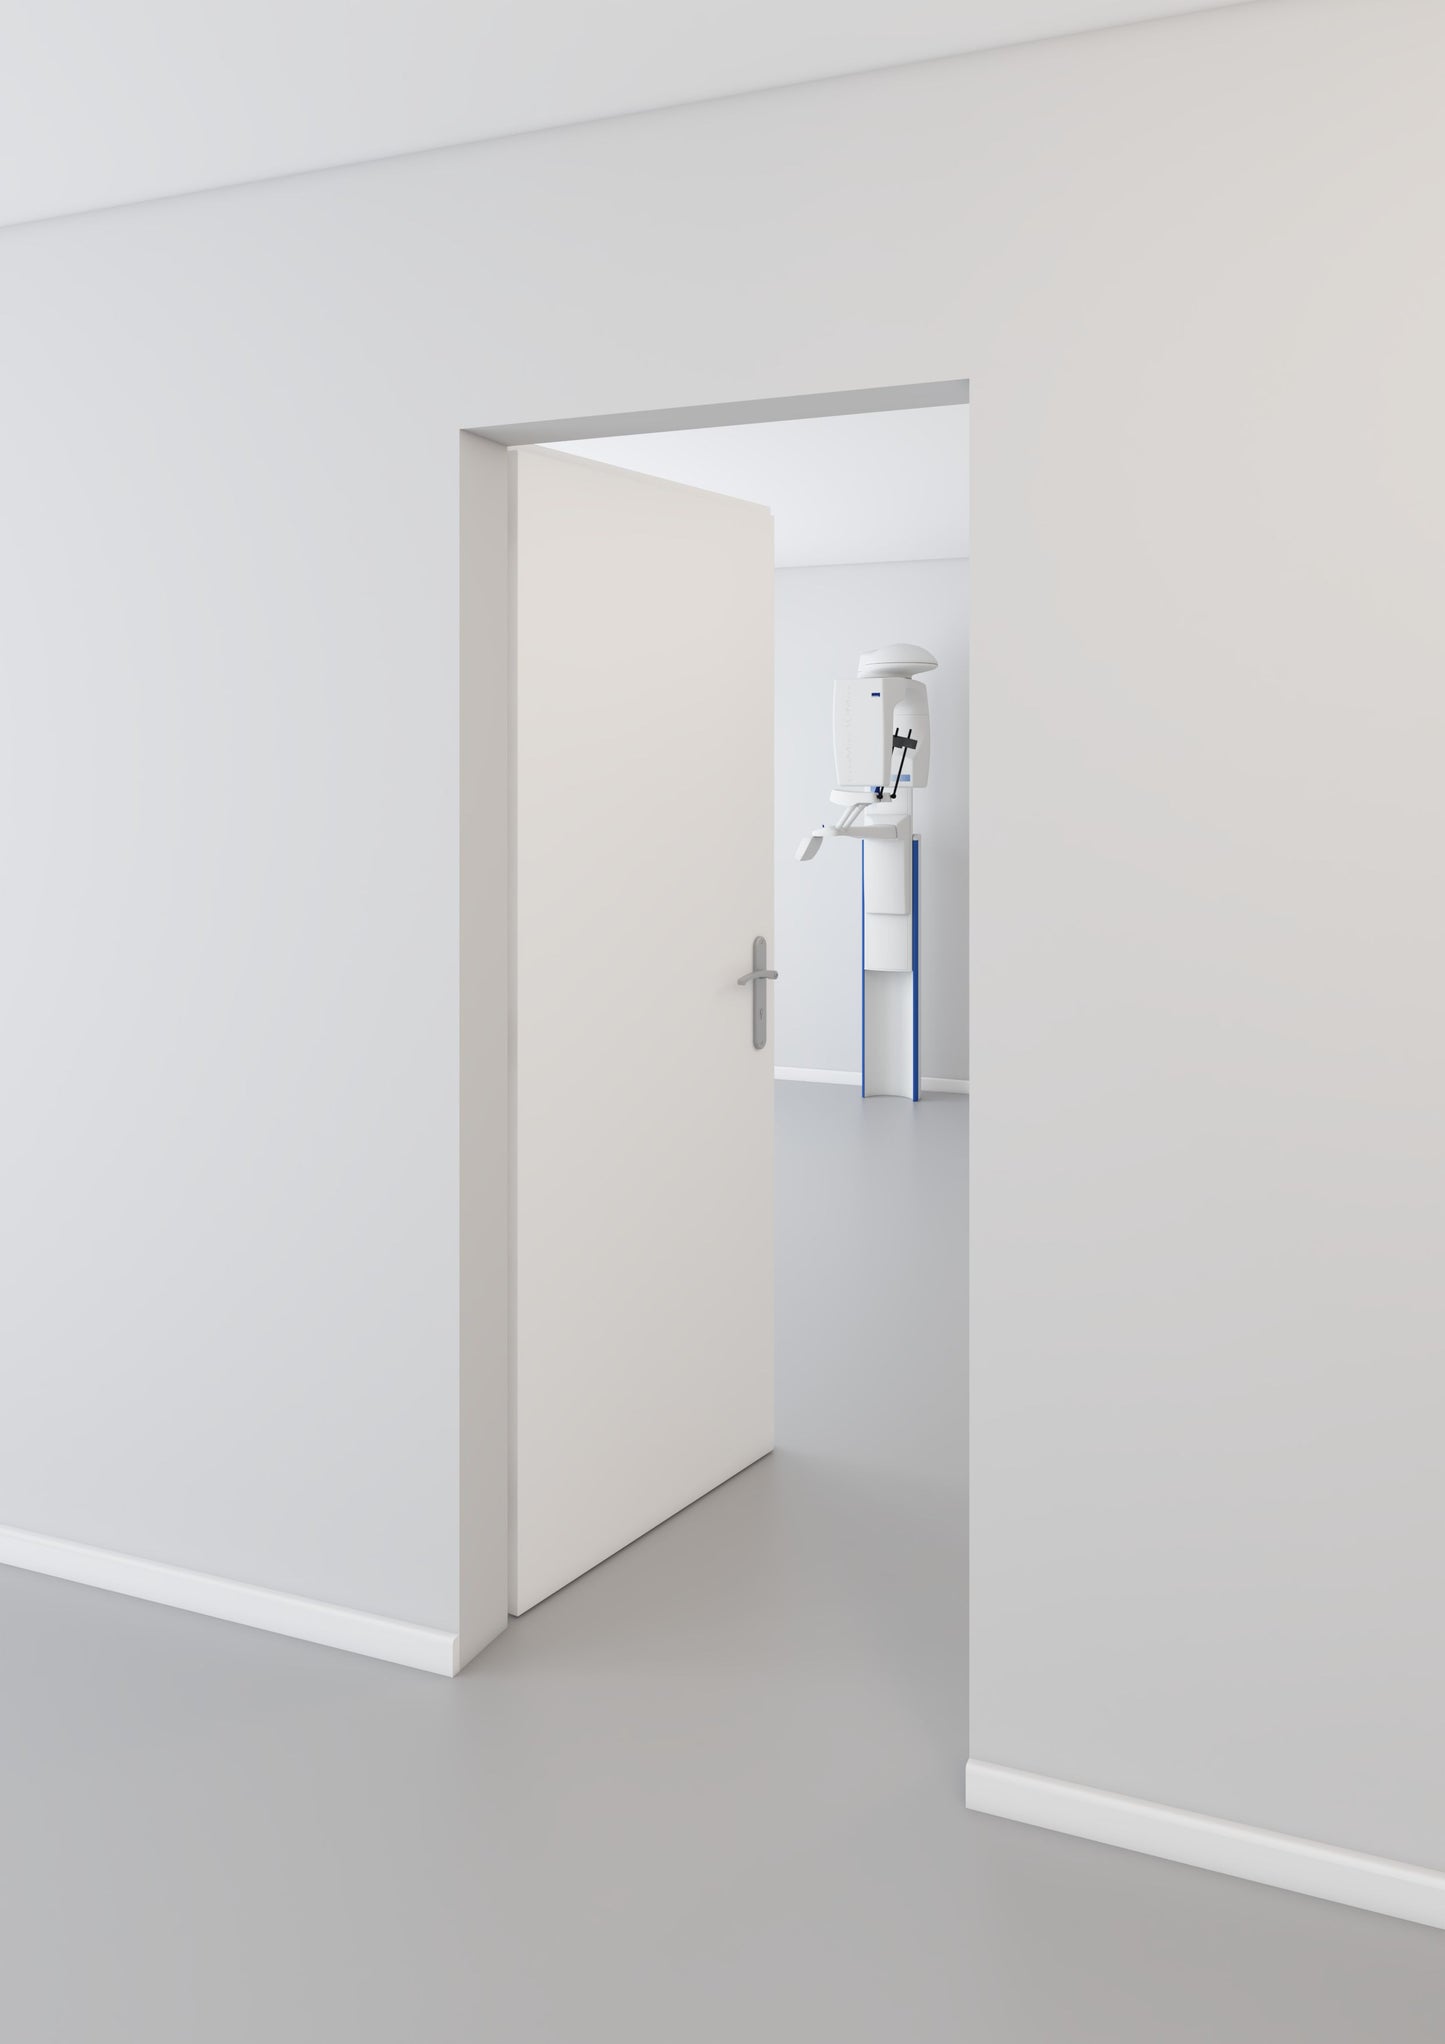 
                  
                    Primer White leaded Door
                  
                